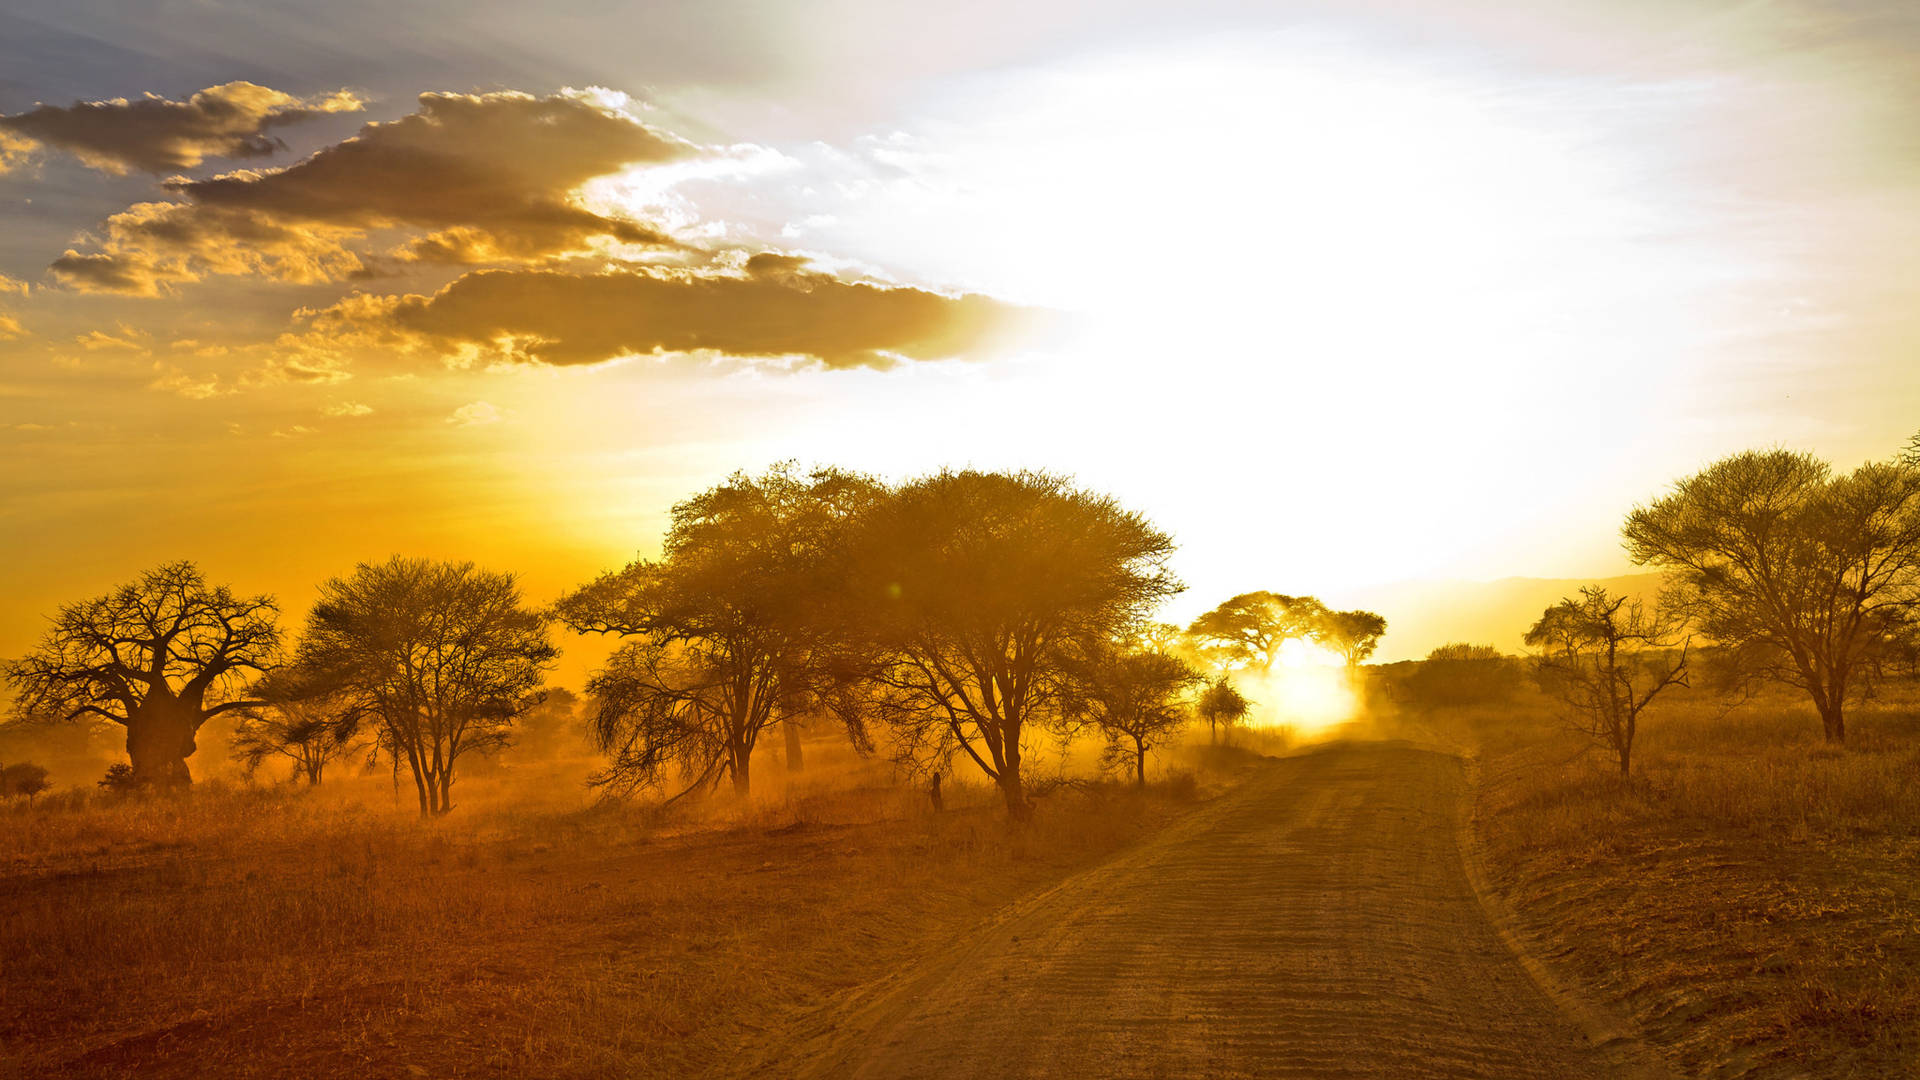 Desert Road In Africa 4k Background